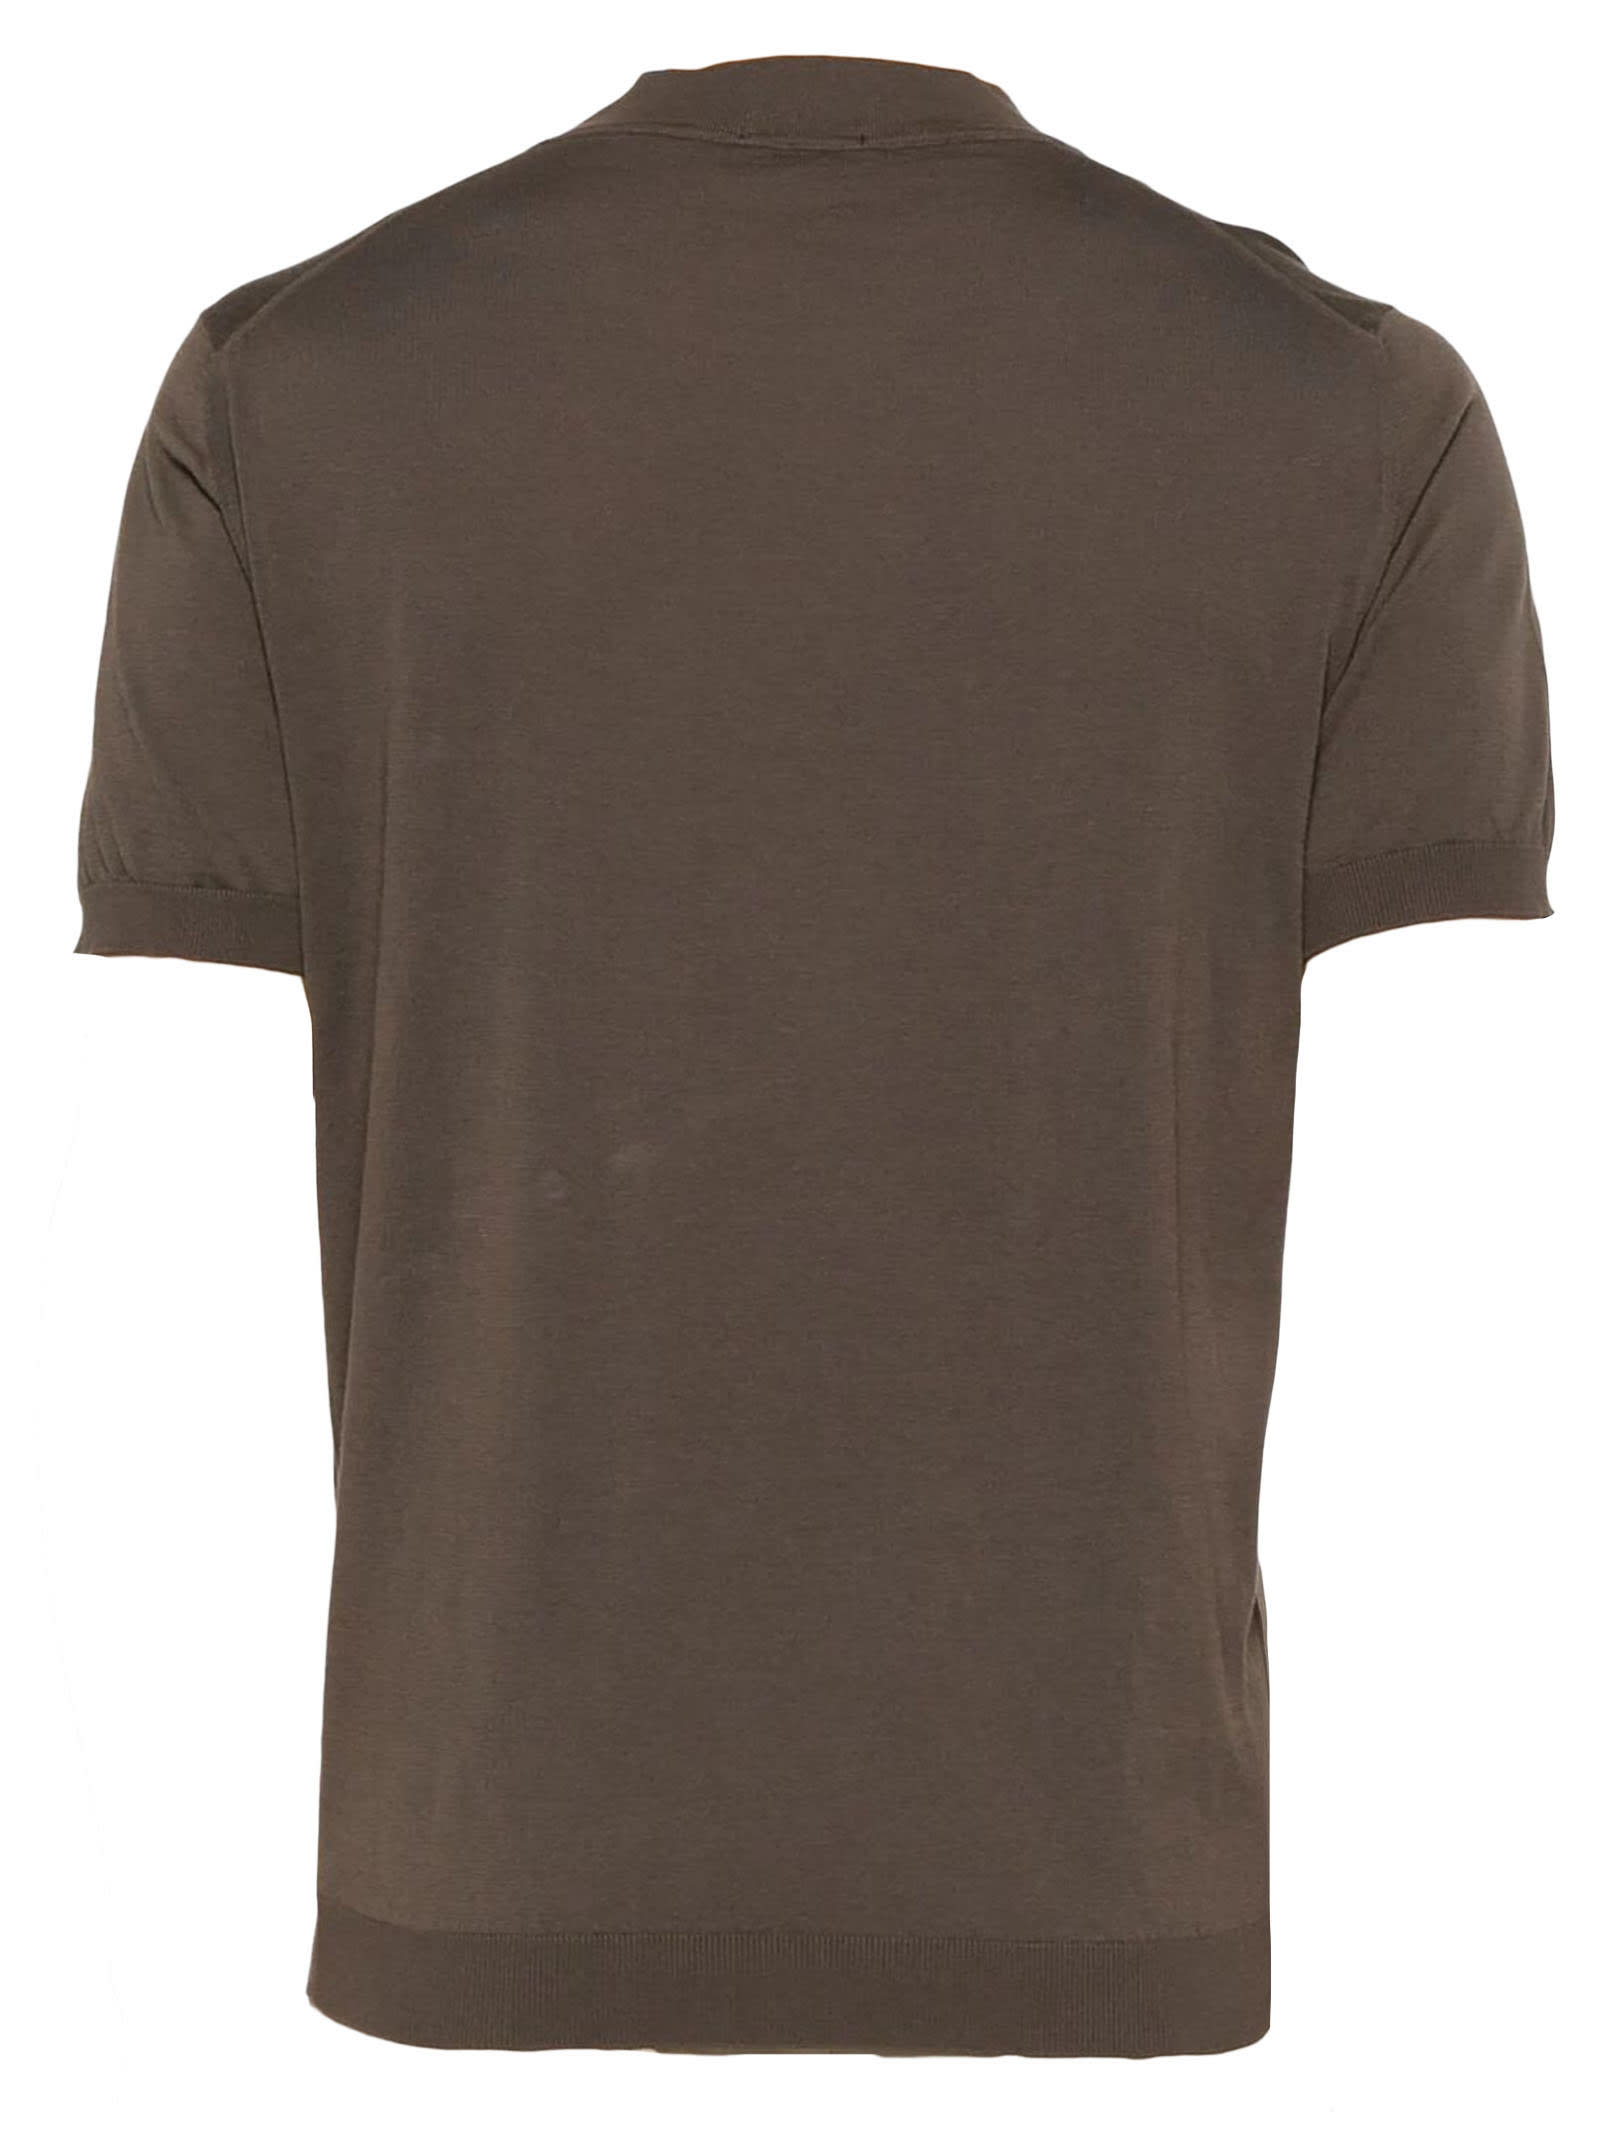 Shop Drumohr Brown Cotton T-shirt